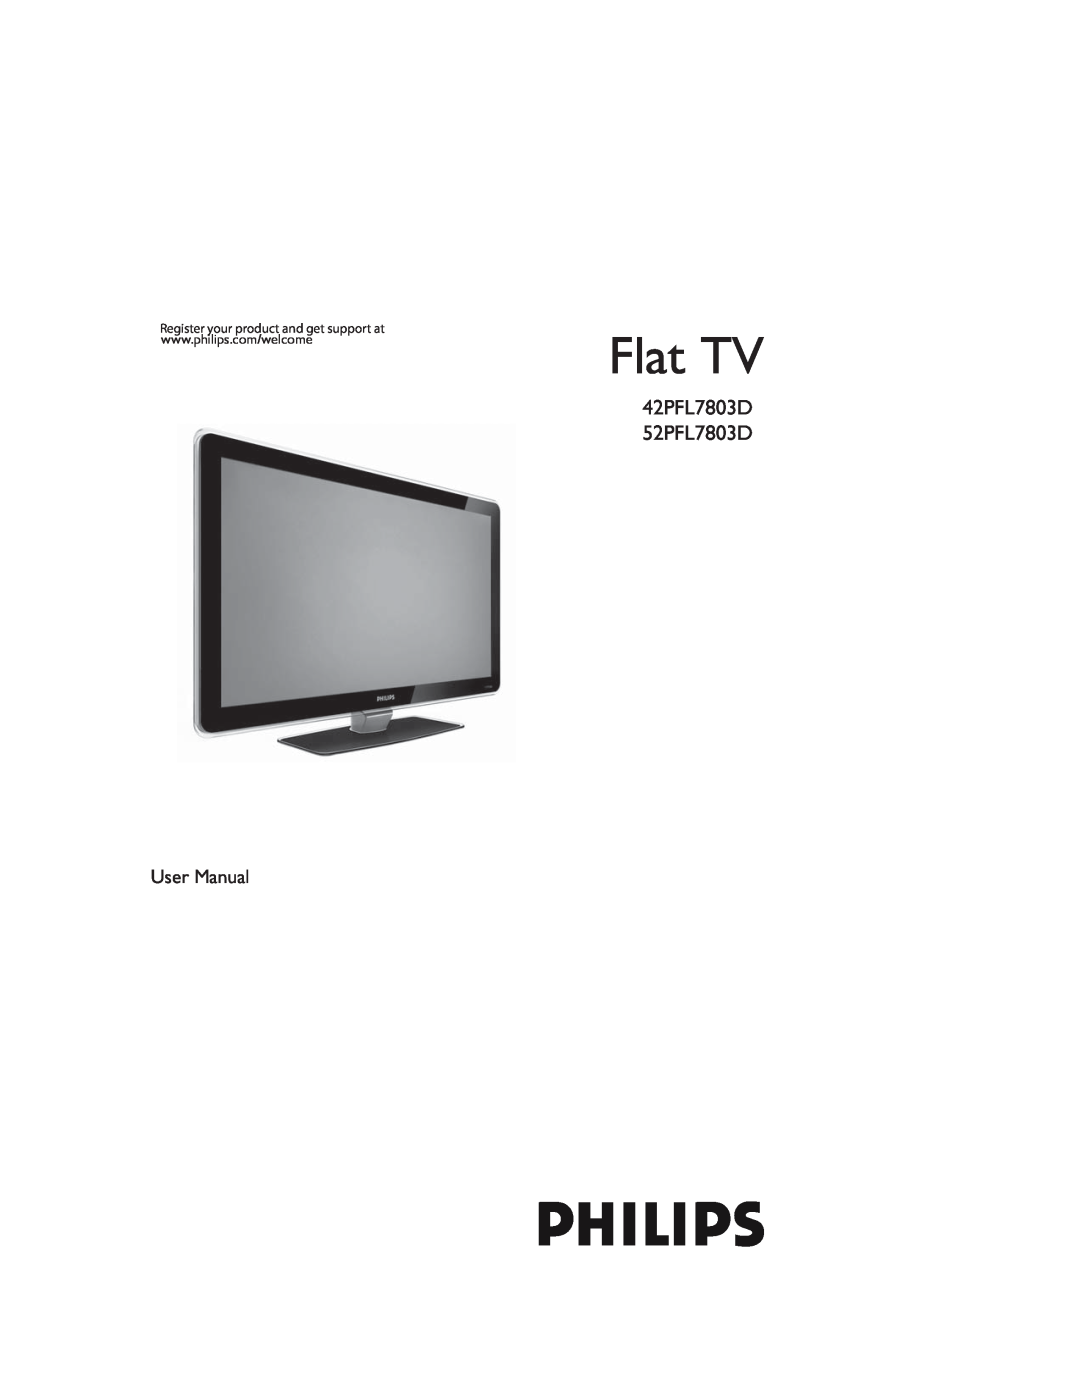 Philips user manual Flat TV, 42PFL7803D 52PFL7803D 